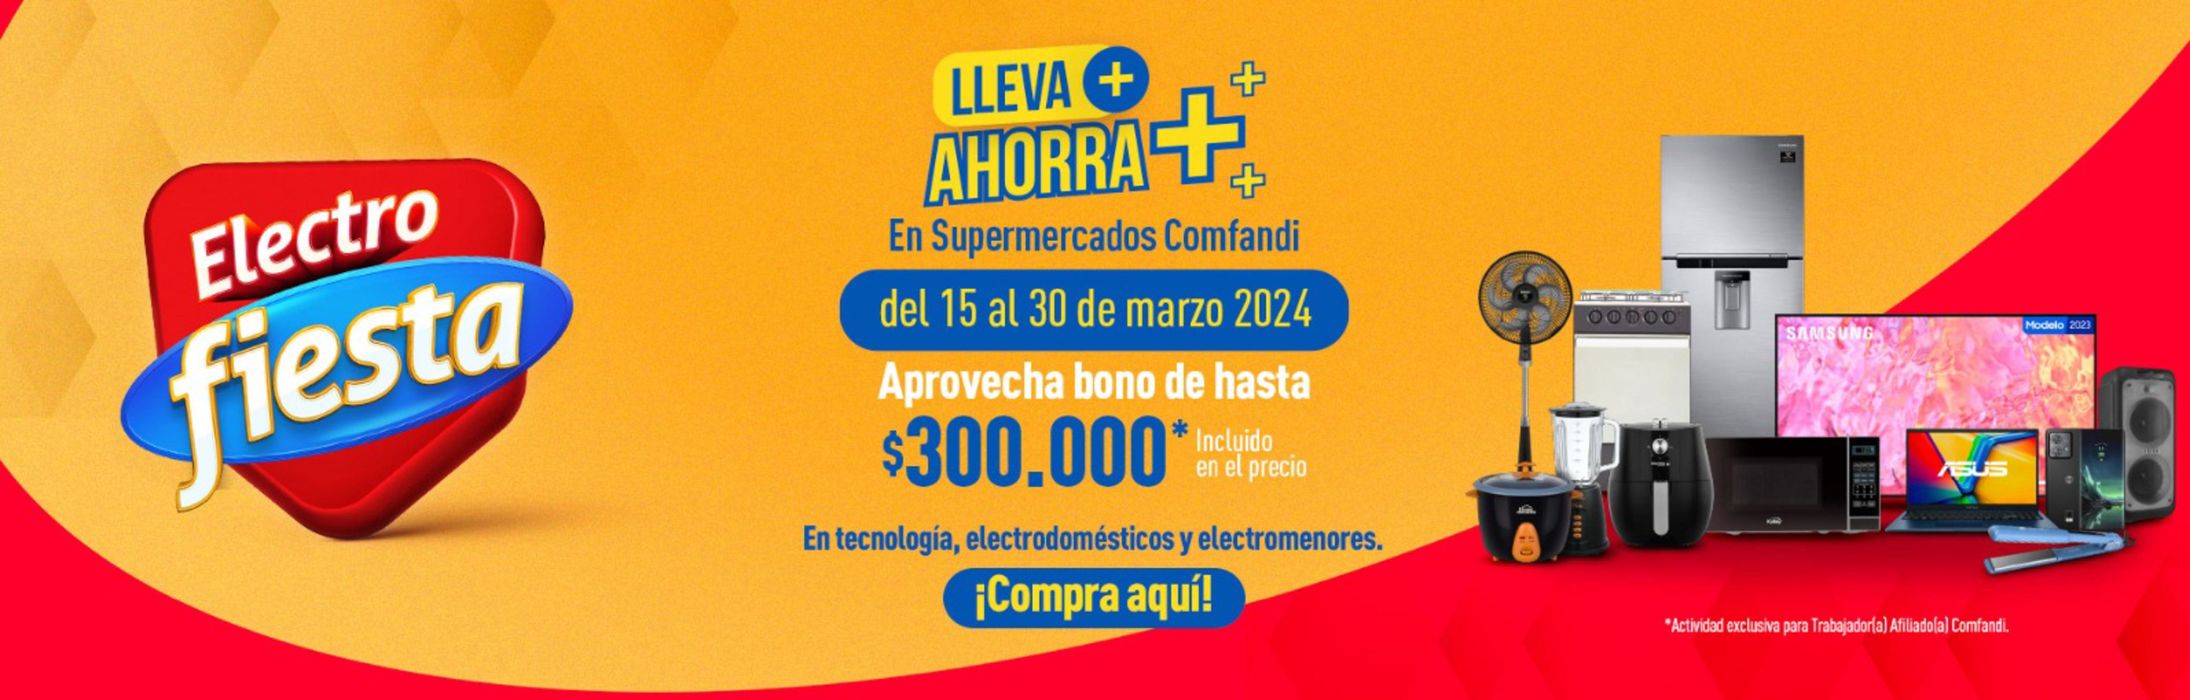 Catálogo Comfandi en Medellín | Lleva ahorro electro fiesta | 27/3/2024 - 30/3/2024